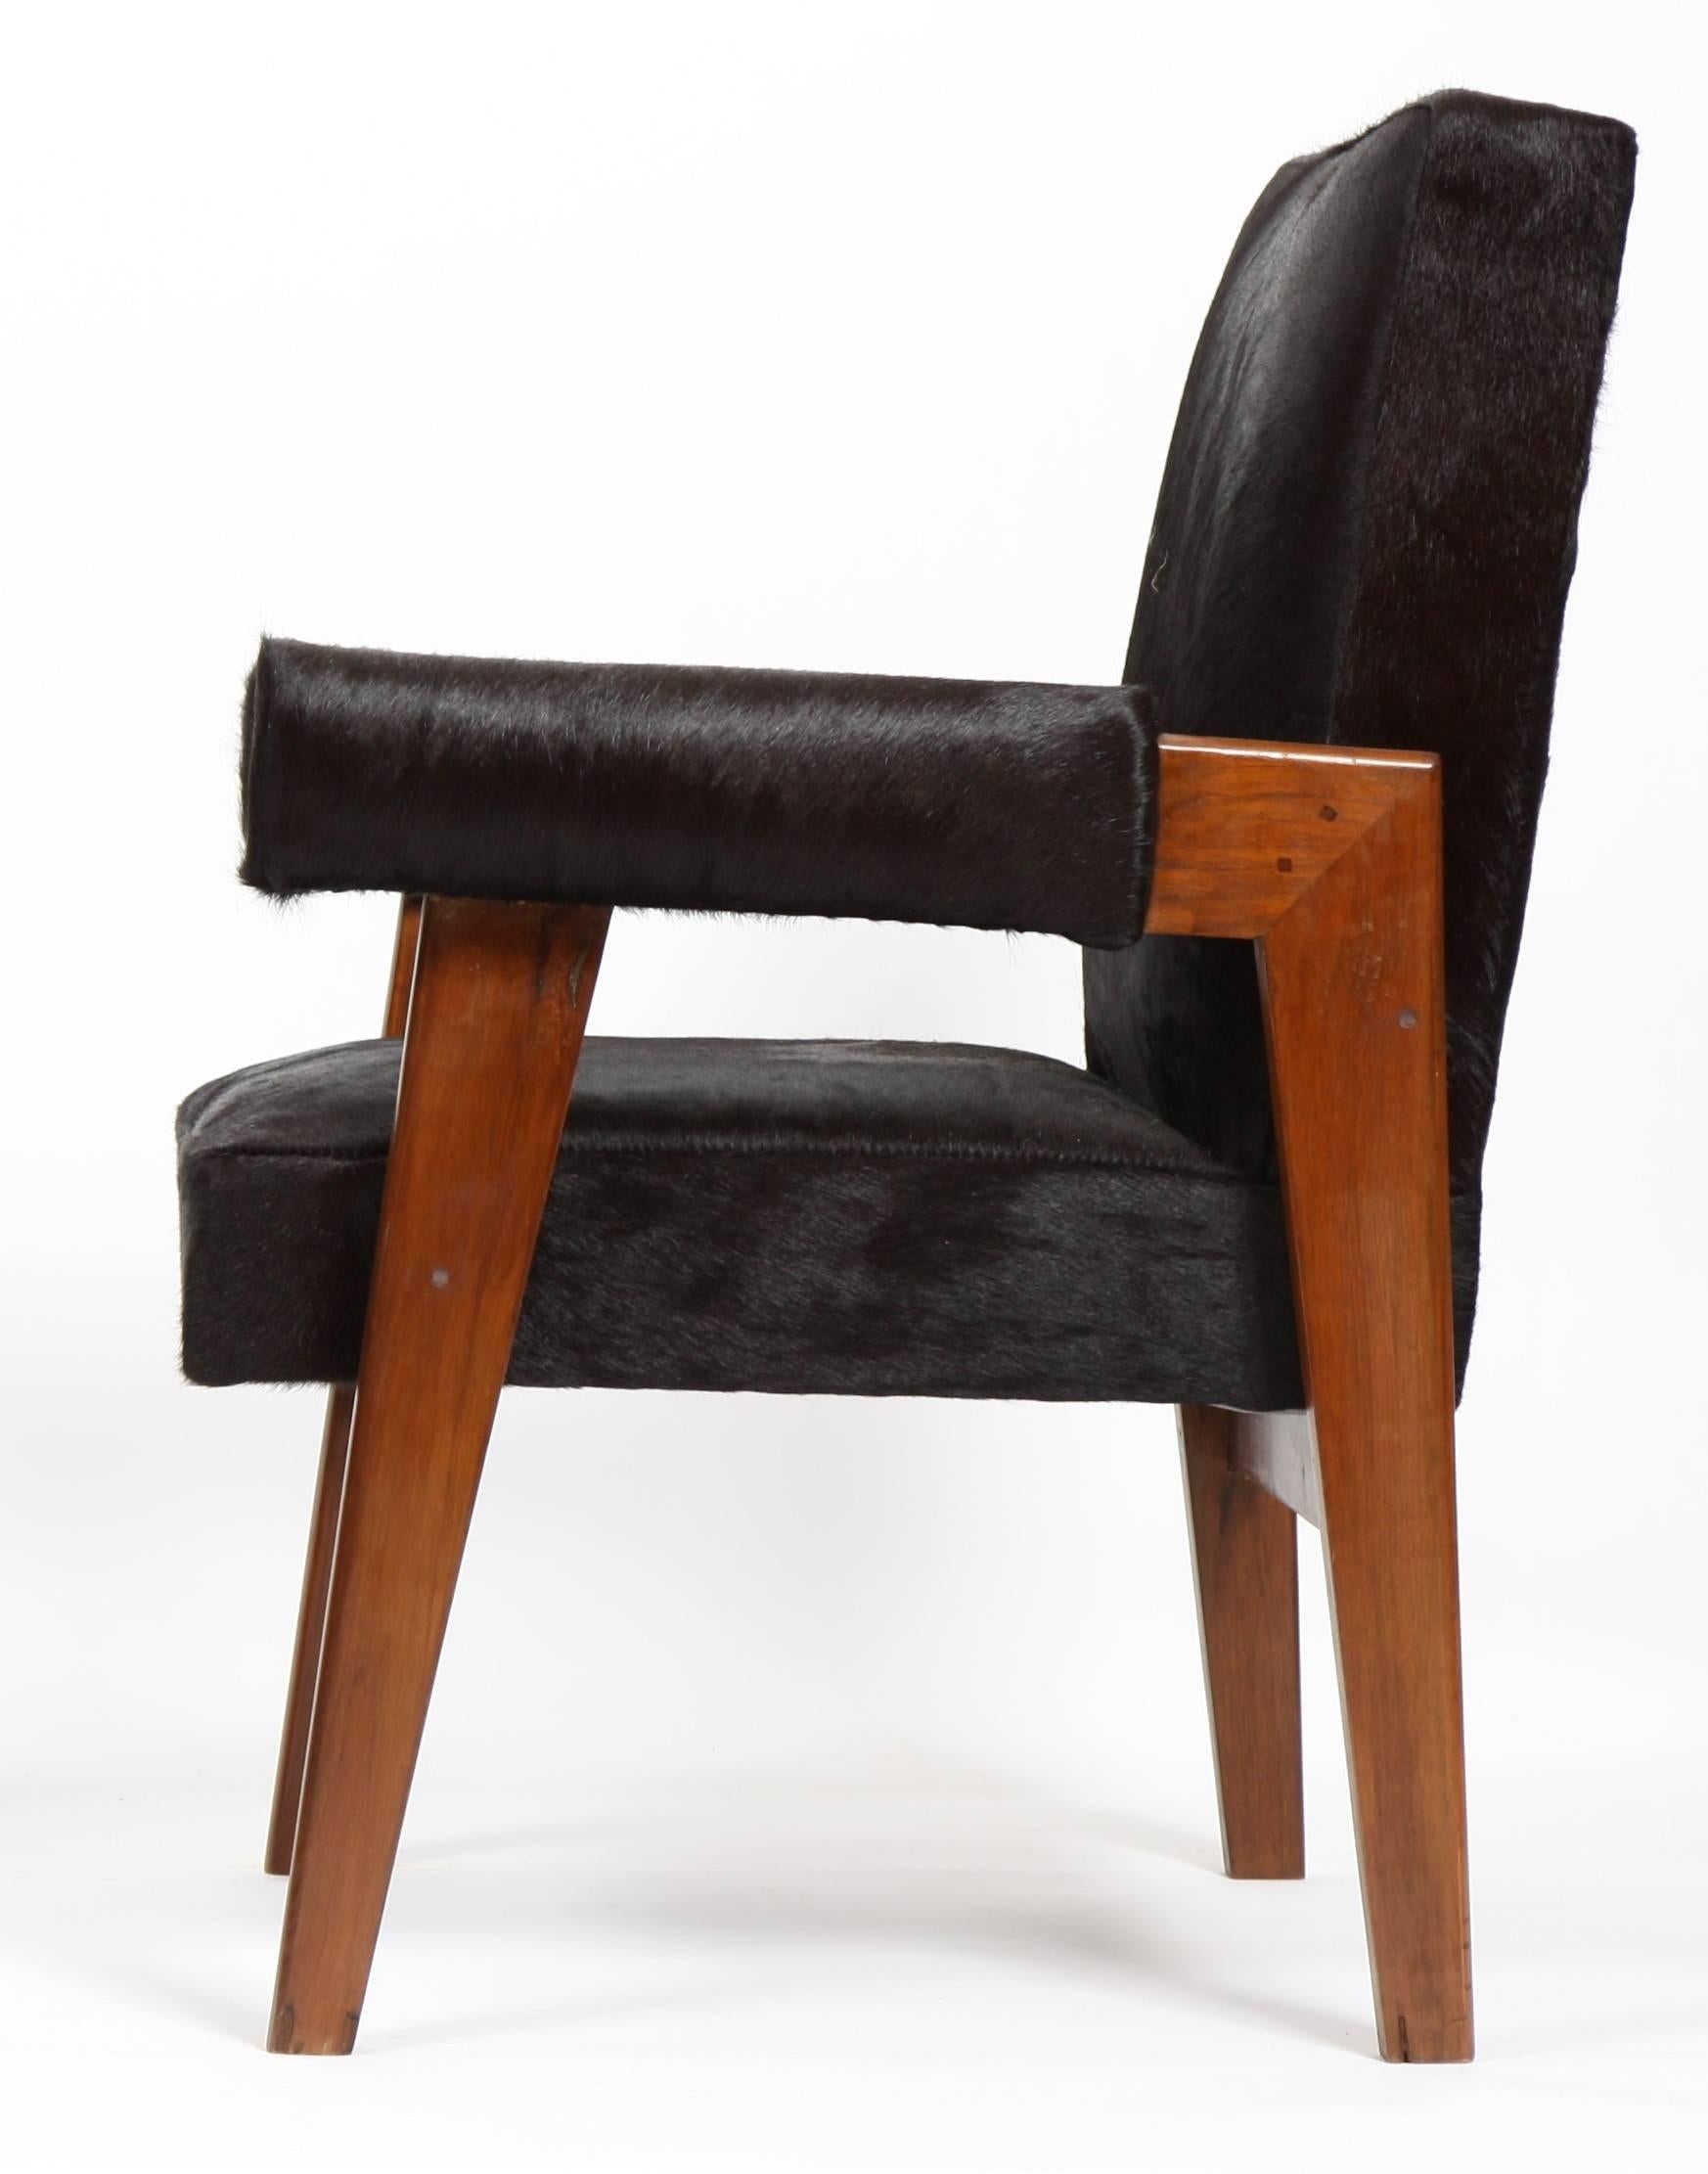 Le Corbusier (1887-1965) - Pierre Jeanneret (1896-1967)
Anwalt Stuhl Modell Teakholz Sessel mit einer flachen schrägen Rückenlehne und seitlichen überbrückten Beinen.
Abnehmbare Armlehnen mit abgerundeten Manschetten. Sitz, Rücken und Manschetten